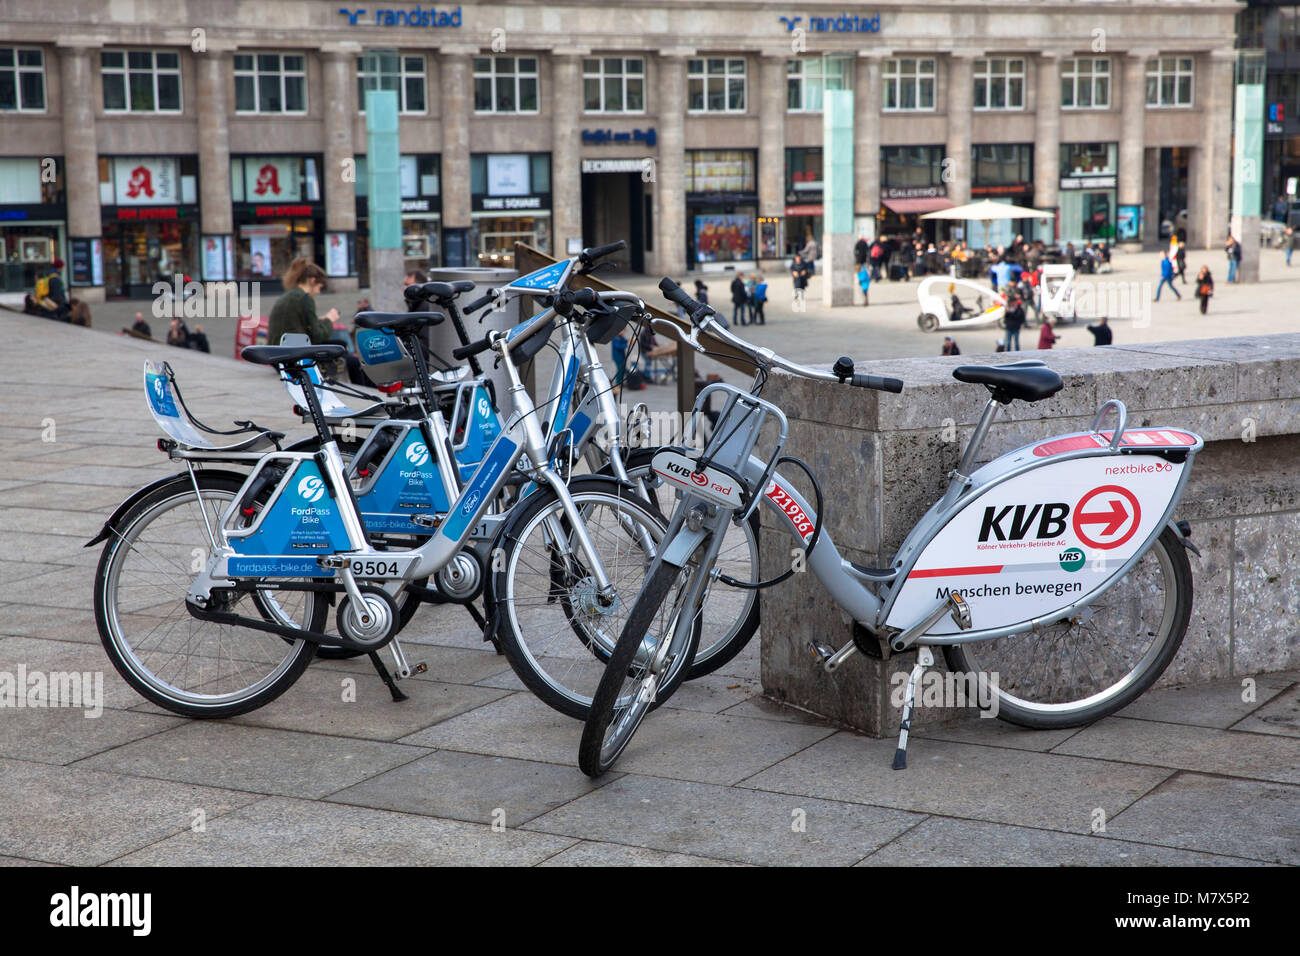 Alemania, Colonia, alquiler de bicicletas de los proveedores competidores  alemanes de trenes (Ford-Pass llamada DB-Bike, una bicicleta) y Koelner  Verkehrsbetriebe KVB (Colonia pu Fotografía de stock - Alamy